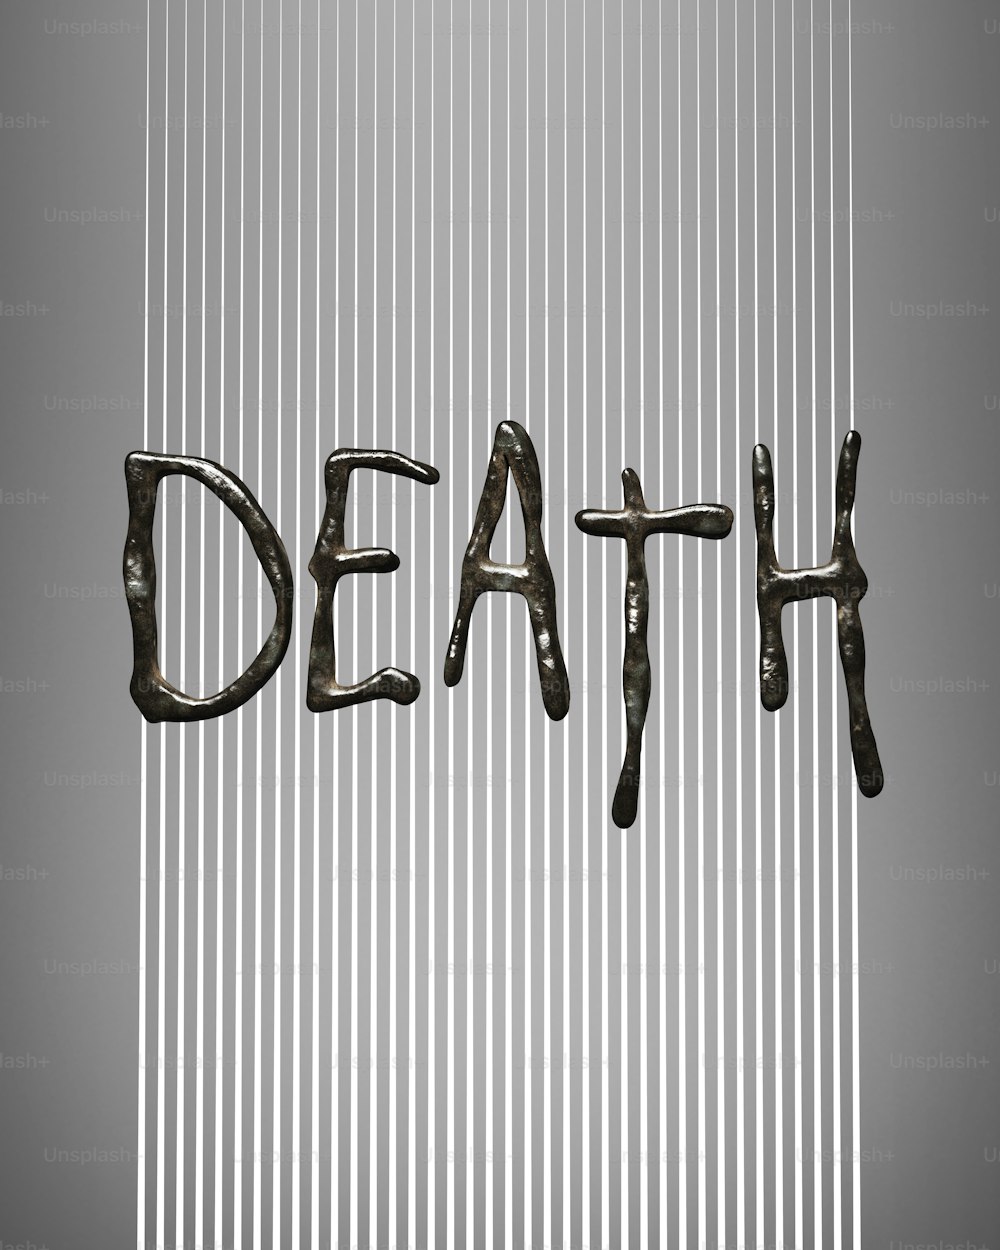 La palabra muerte está escrita en letras metálicas